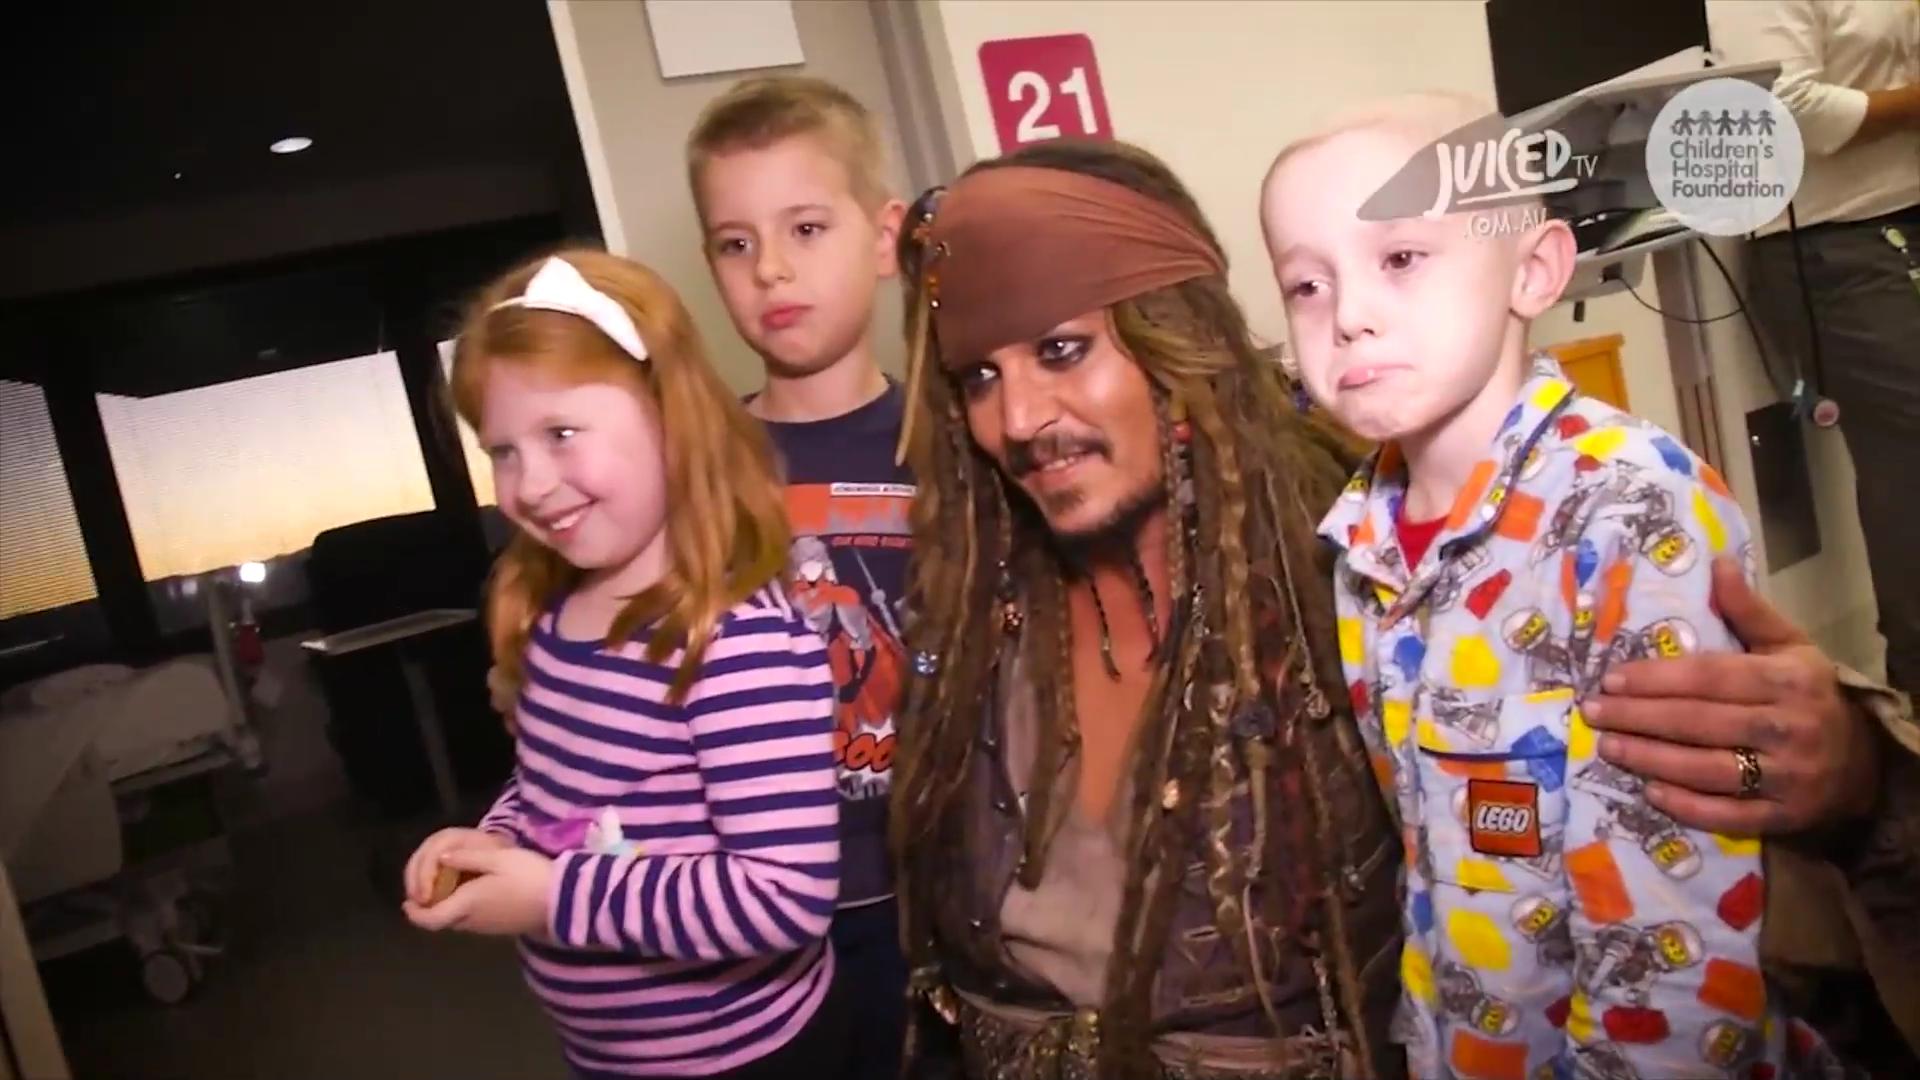 Johnny Depp visits children's hospital dressed as Jack Sparrow